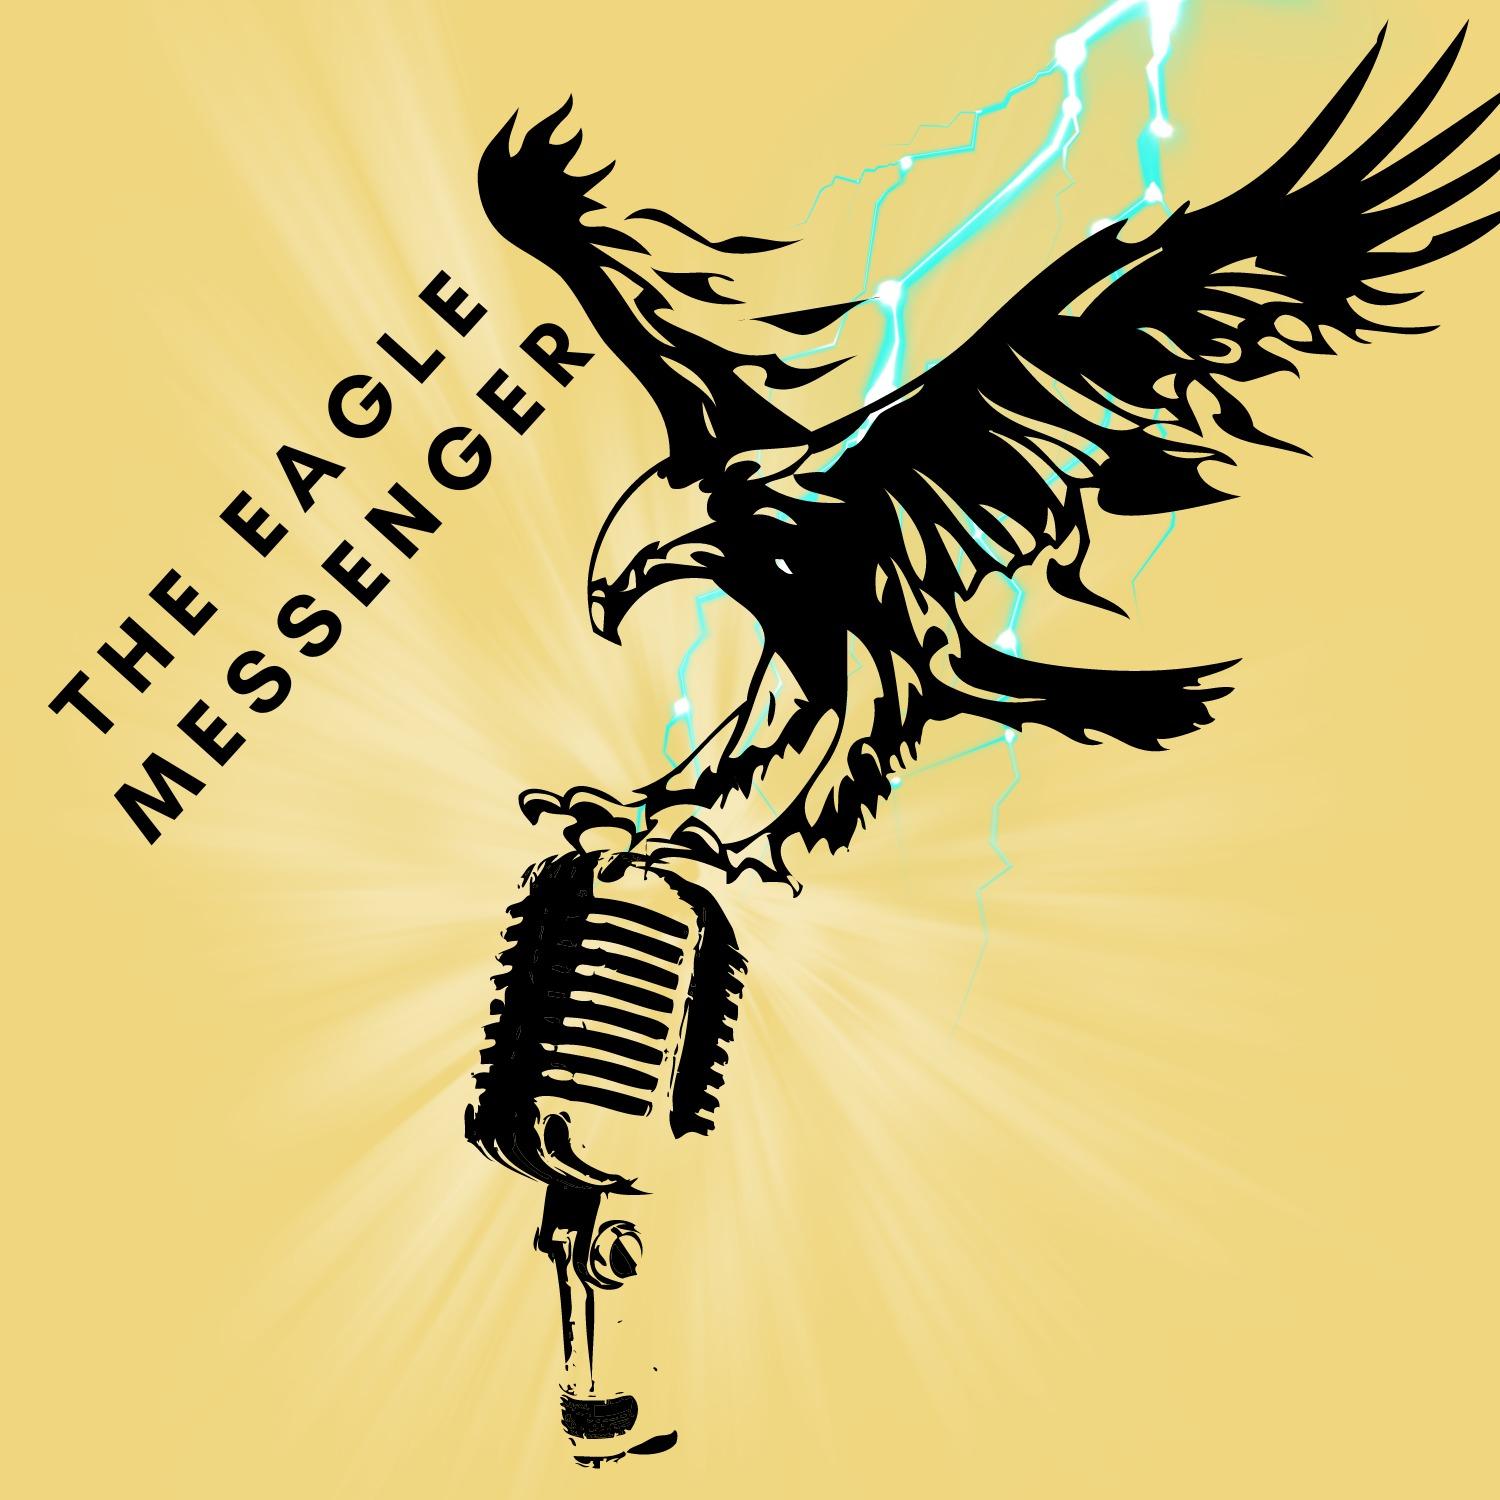 The Eagle Messenger